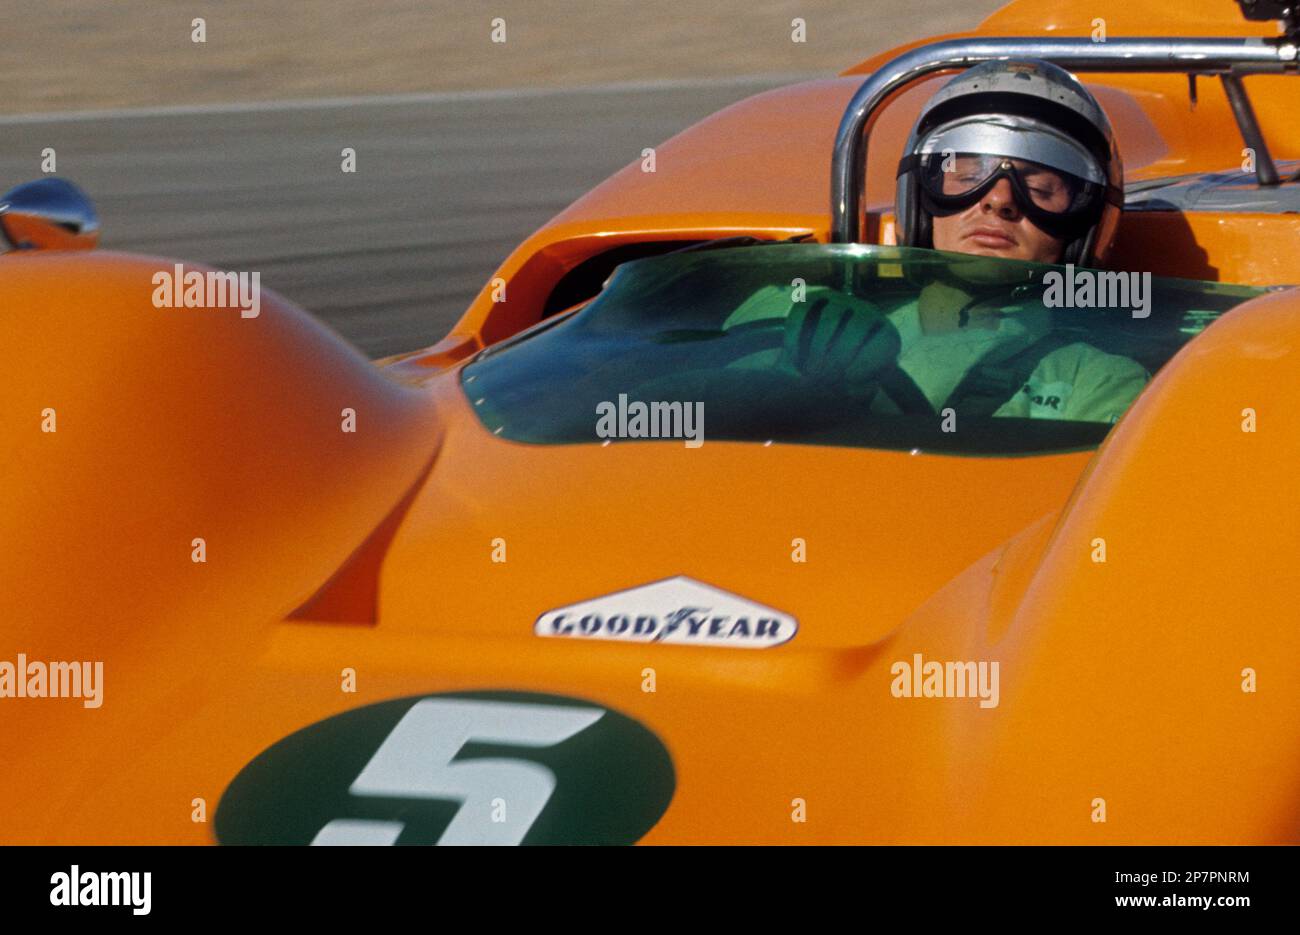 CAN-Am (Canadian-American Challenge Cup), 1967: Bruce McLaren in pratica sul circuito di Laguna Seca a Monterrey, in California, al volante della M6A Foto Stock